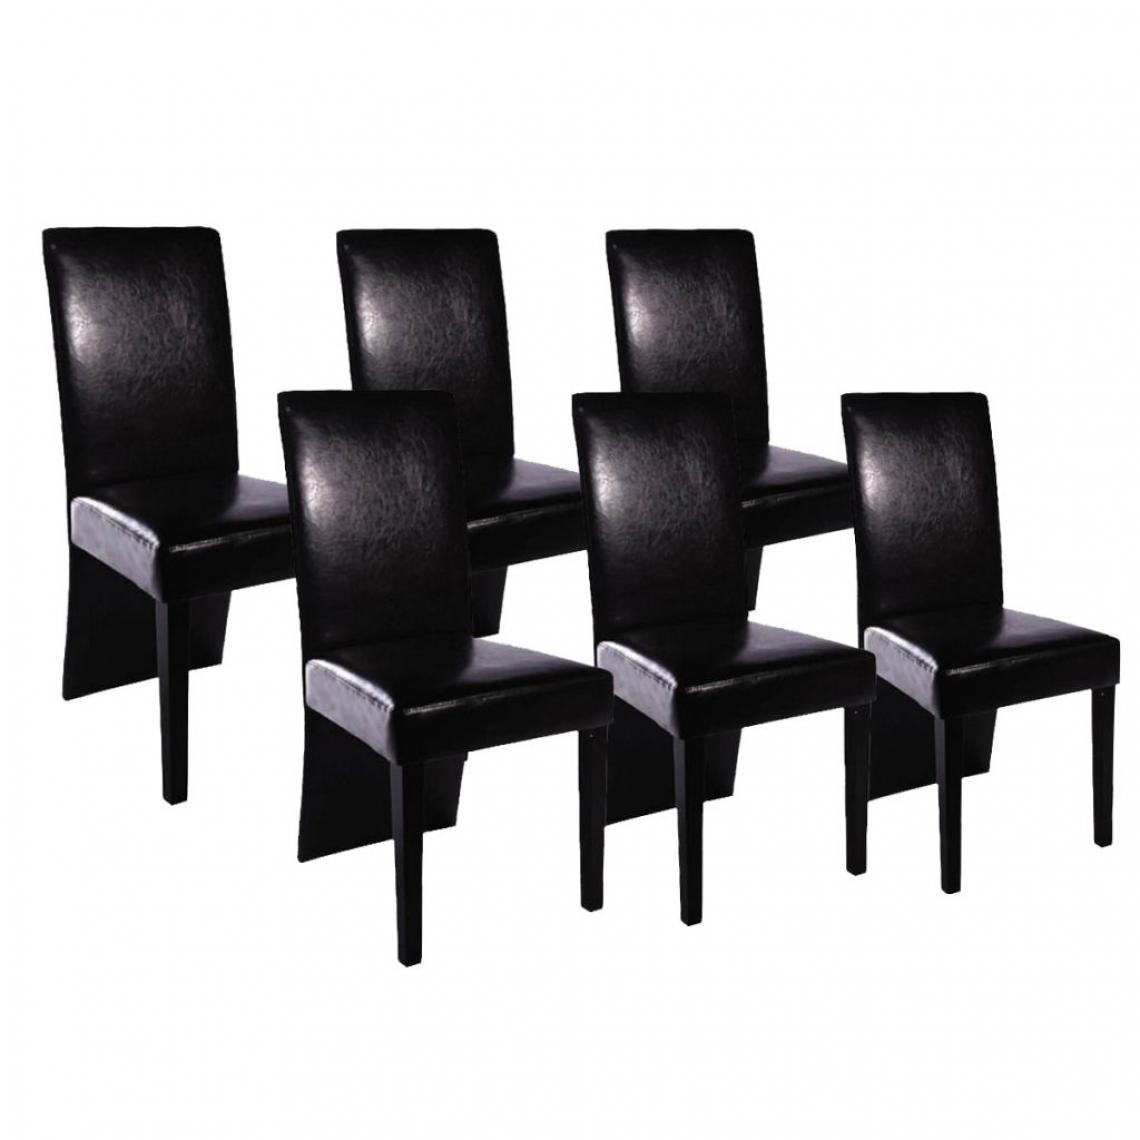 Decoshop26 - Lot de 6 chaises de salle à manger cuisine design et moderne en similicuir noir CDS022679 - Chaises